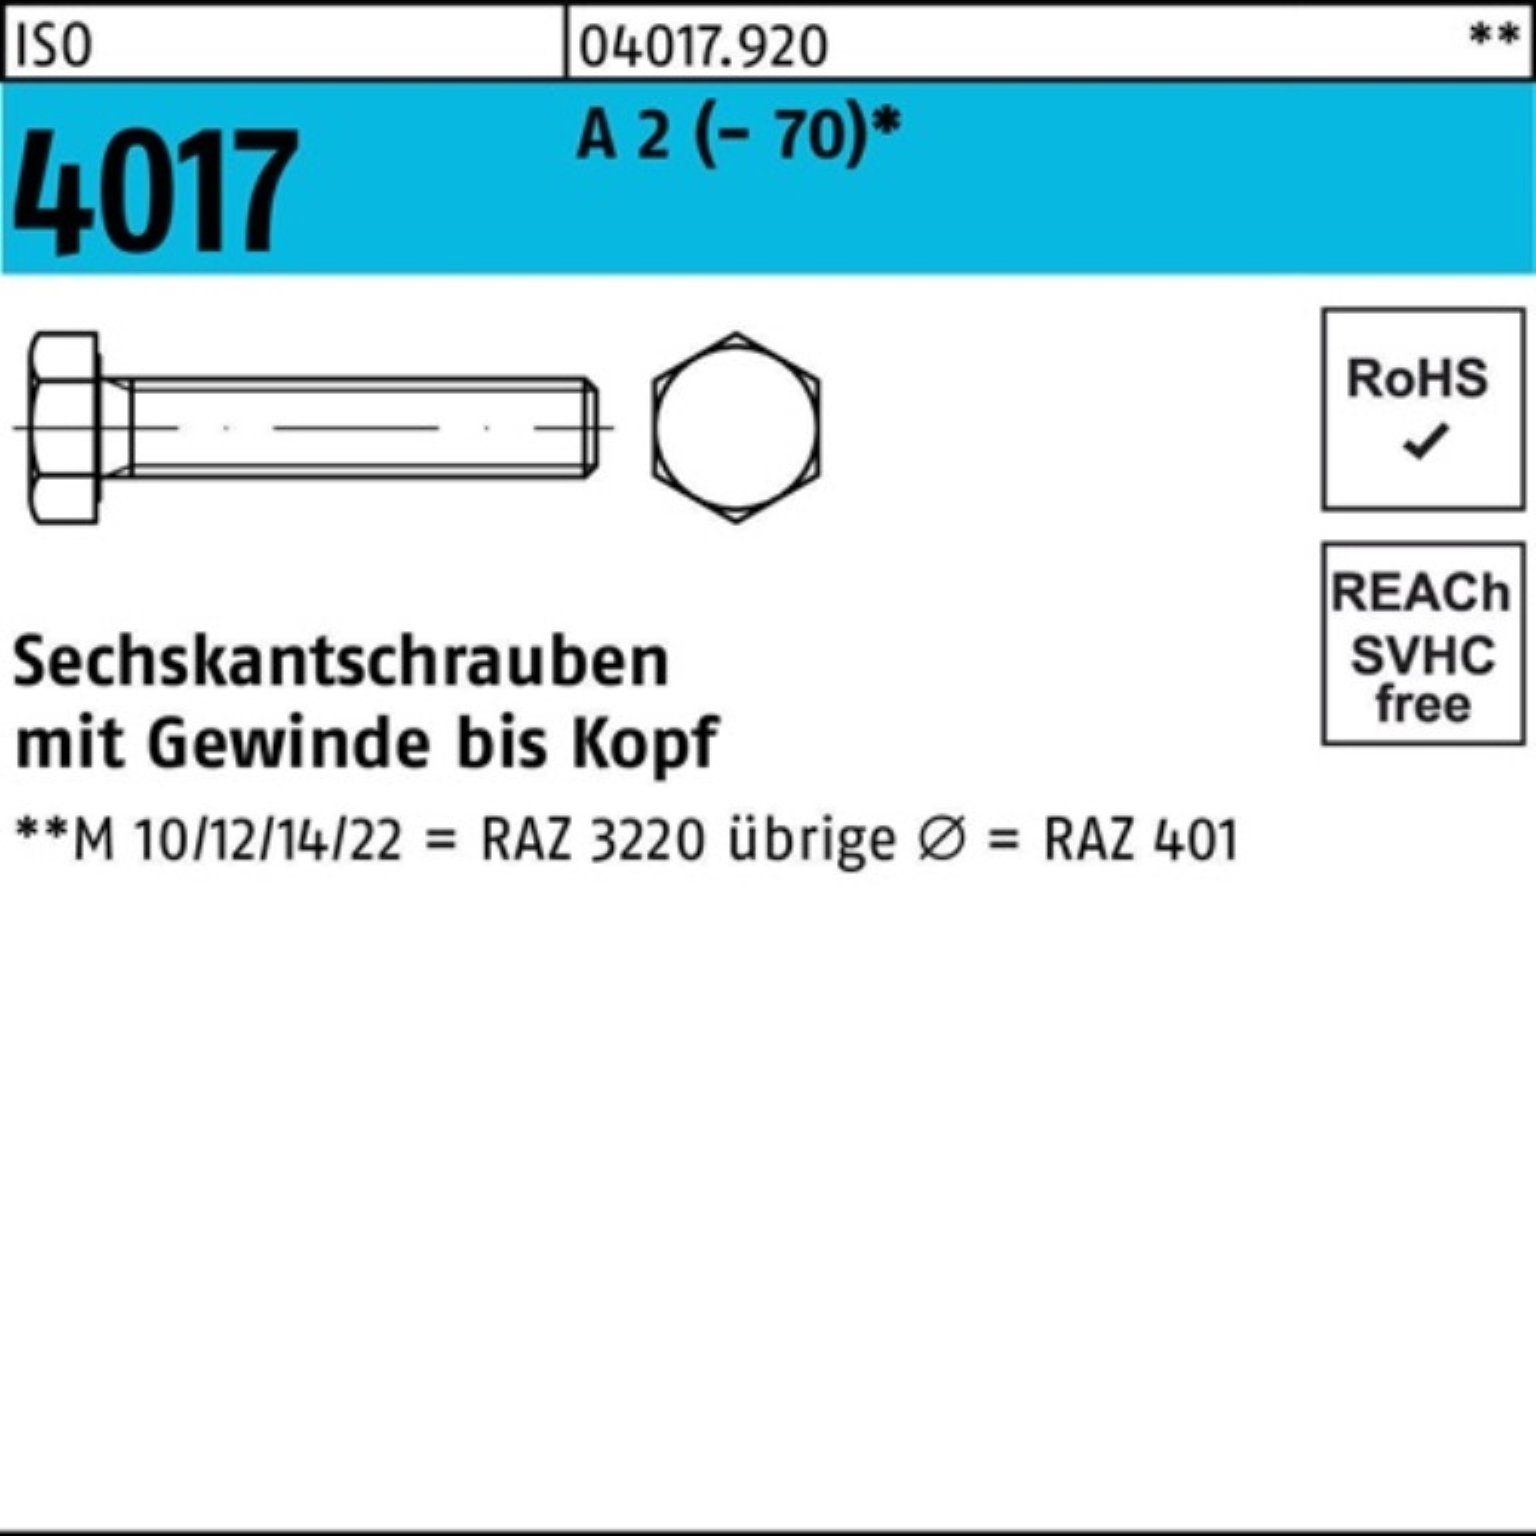 Bufab Sechskantschraube 100er Pack Sechskantschraube ISO 4017 VG M20x 80 A 2 (70) 25 Stück